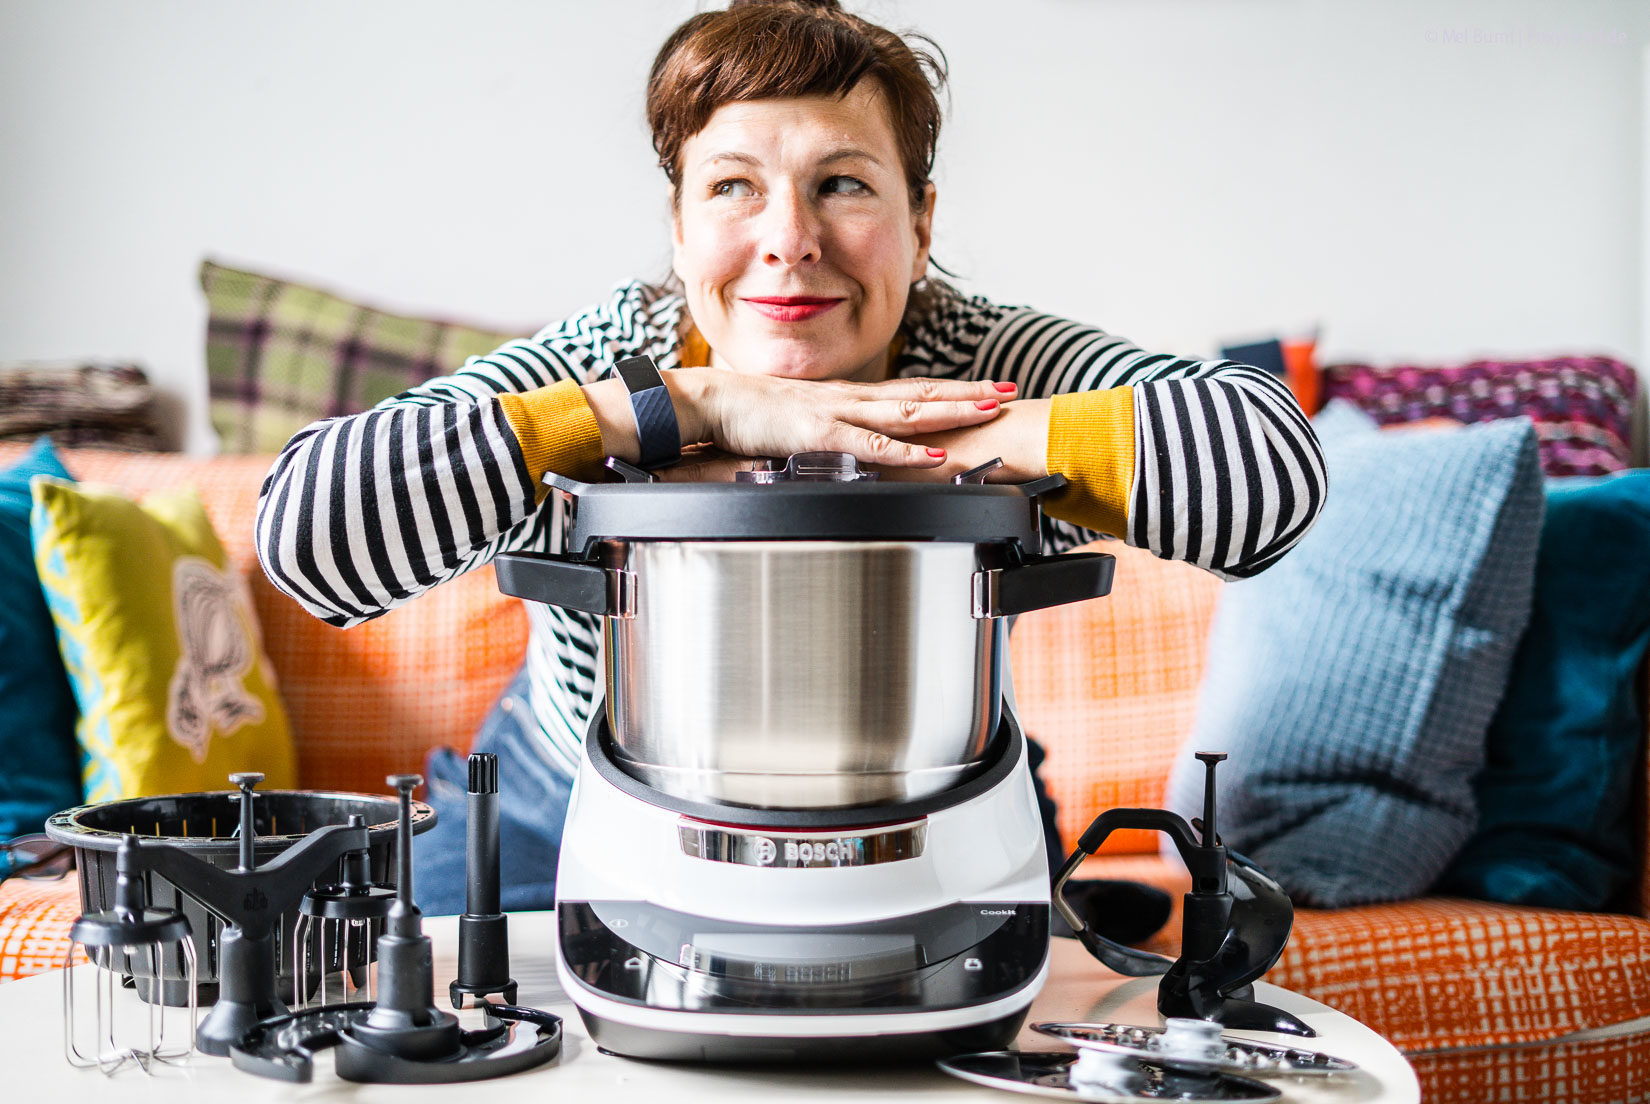 Cookit von Bosch meine neue kochende Alleskönner- Küchenmaschine | FoxyFood.de